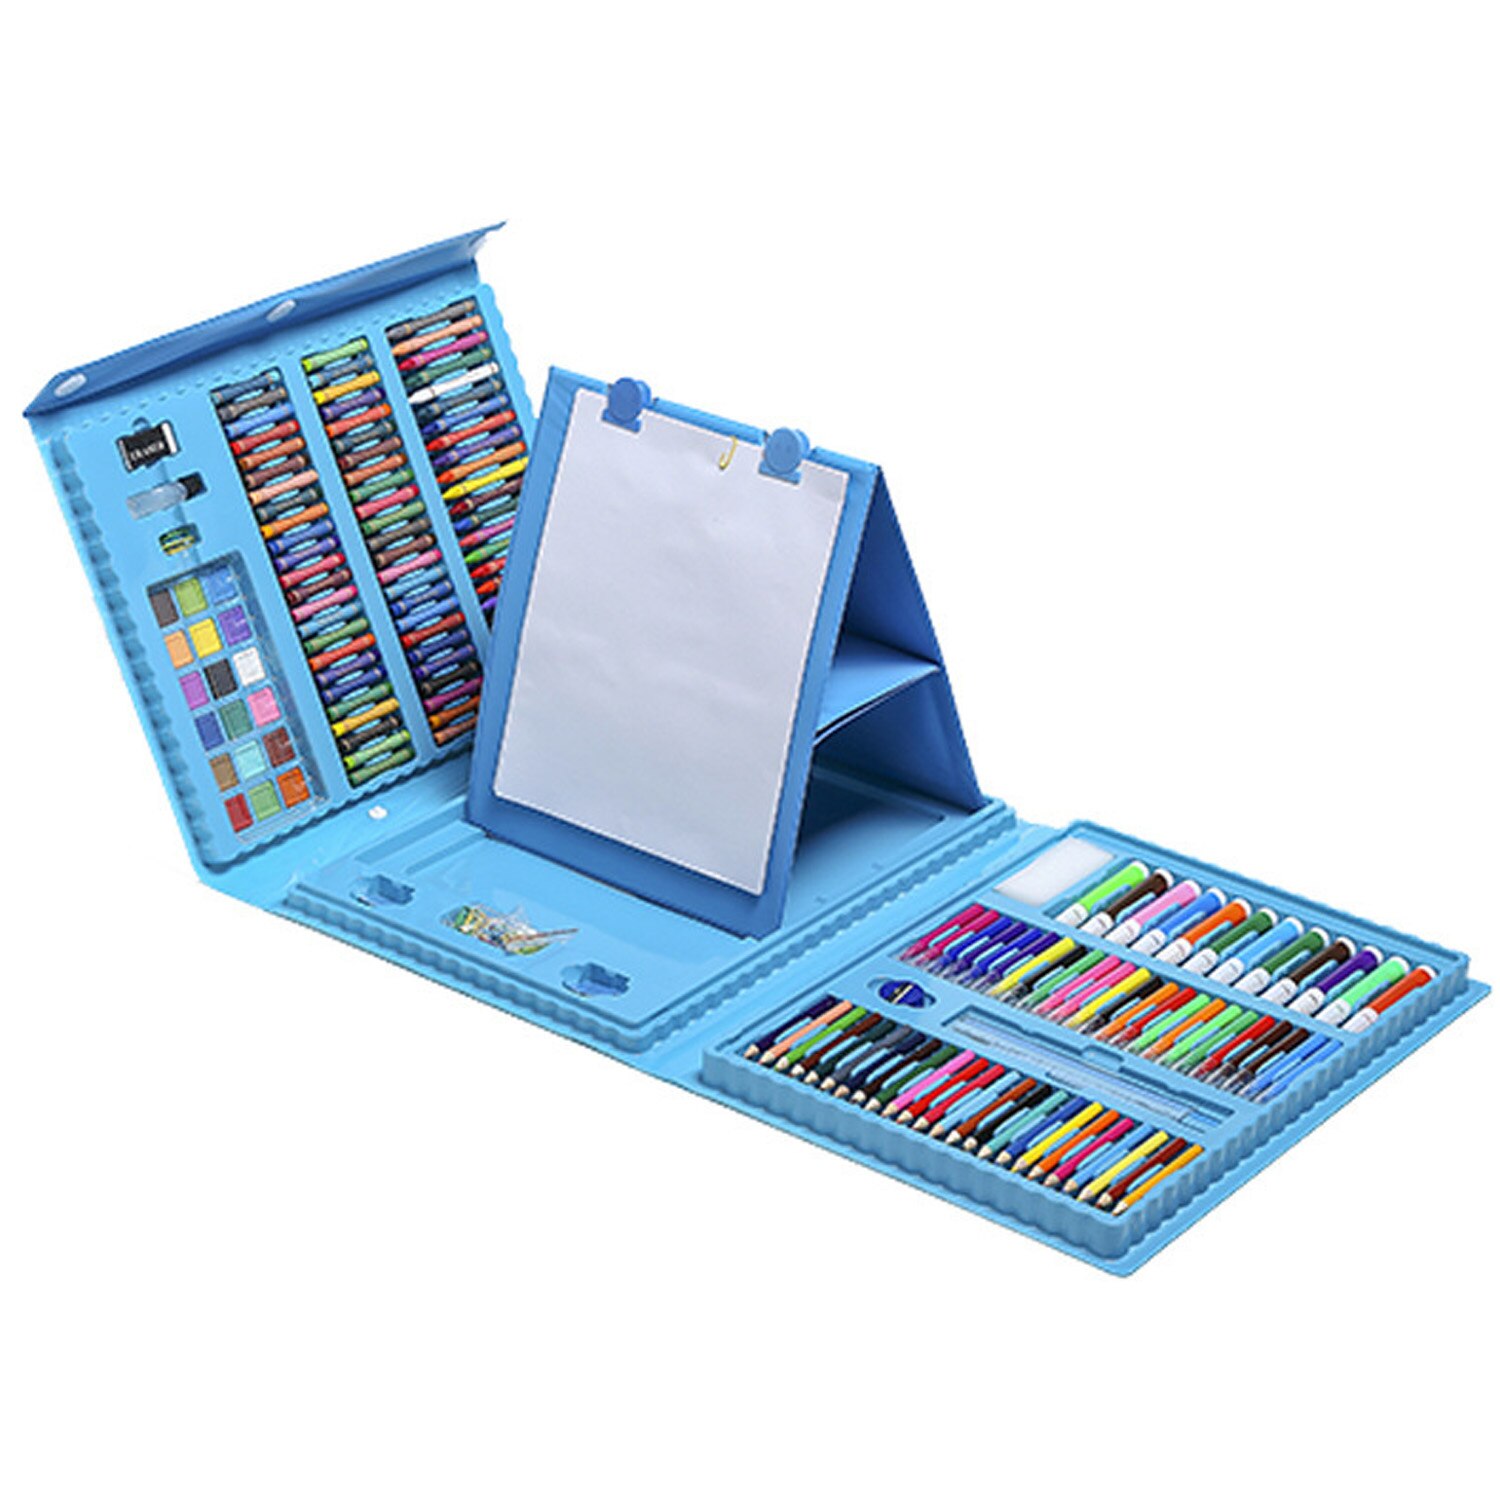 208 stk børn børn maleri tegneværktøj sæt med farvede blyanter tuschblyanter farveblyanter til hjemmeskole børnehaveforsyninger: Blå